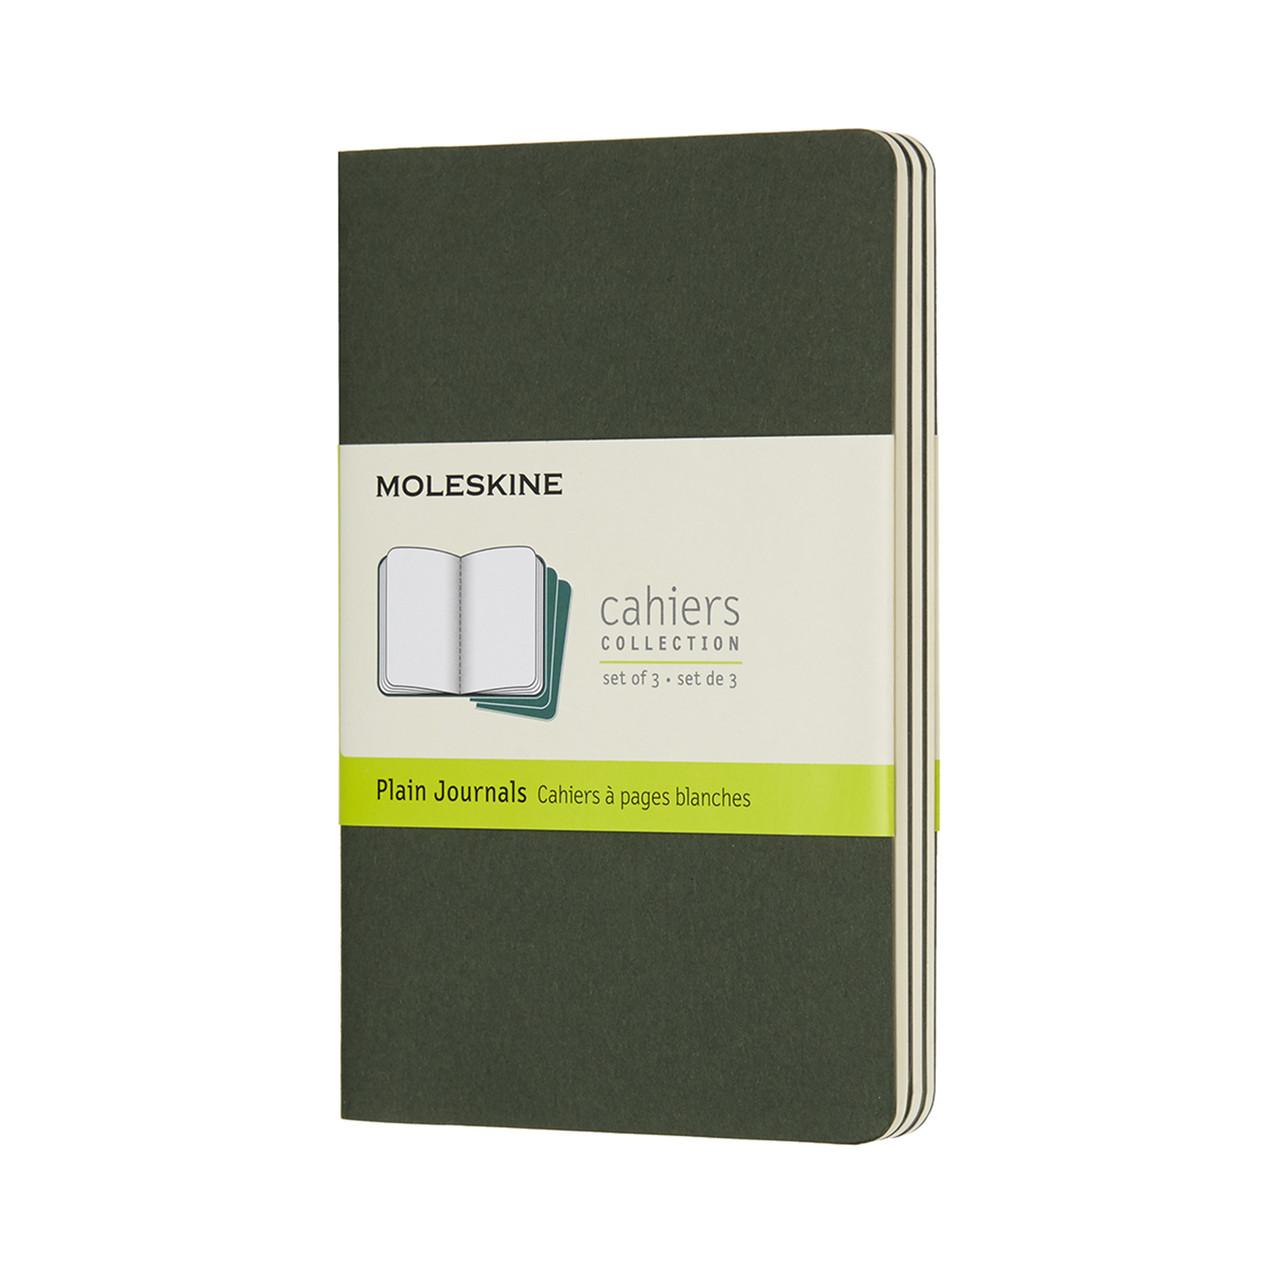 Moleskine Cahier Journals Pocket Plain 3 Set, MyrtLE GREEN